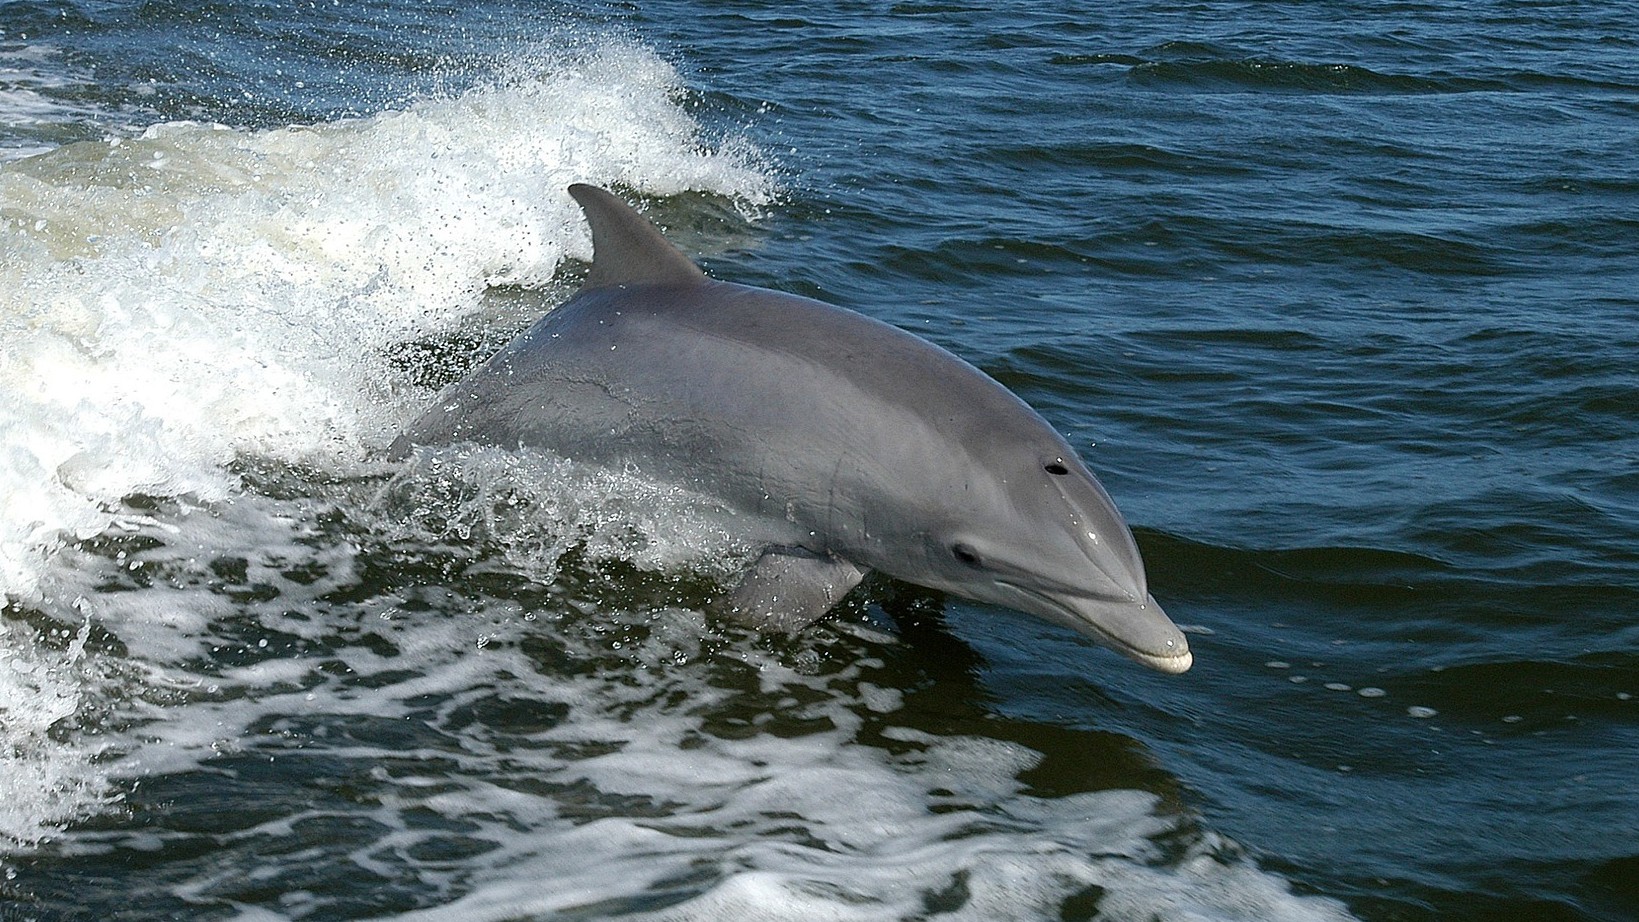 Hallan muerto as delfín en Playa Delfines, muy cerca de Puerto EscondidoHallan muerto as delfín en Playa Delfines, muy cerca de Puerto Escondido